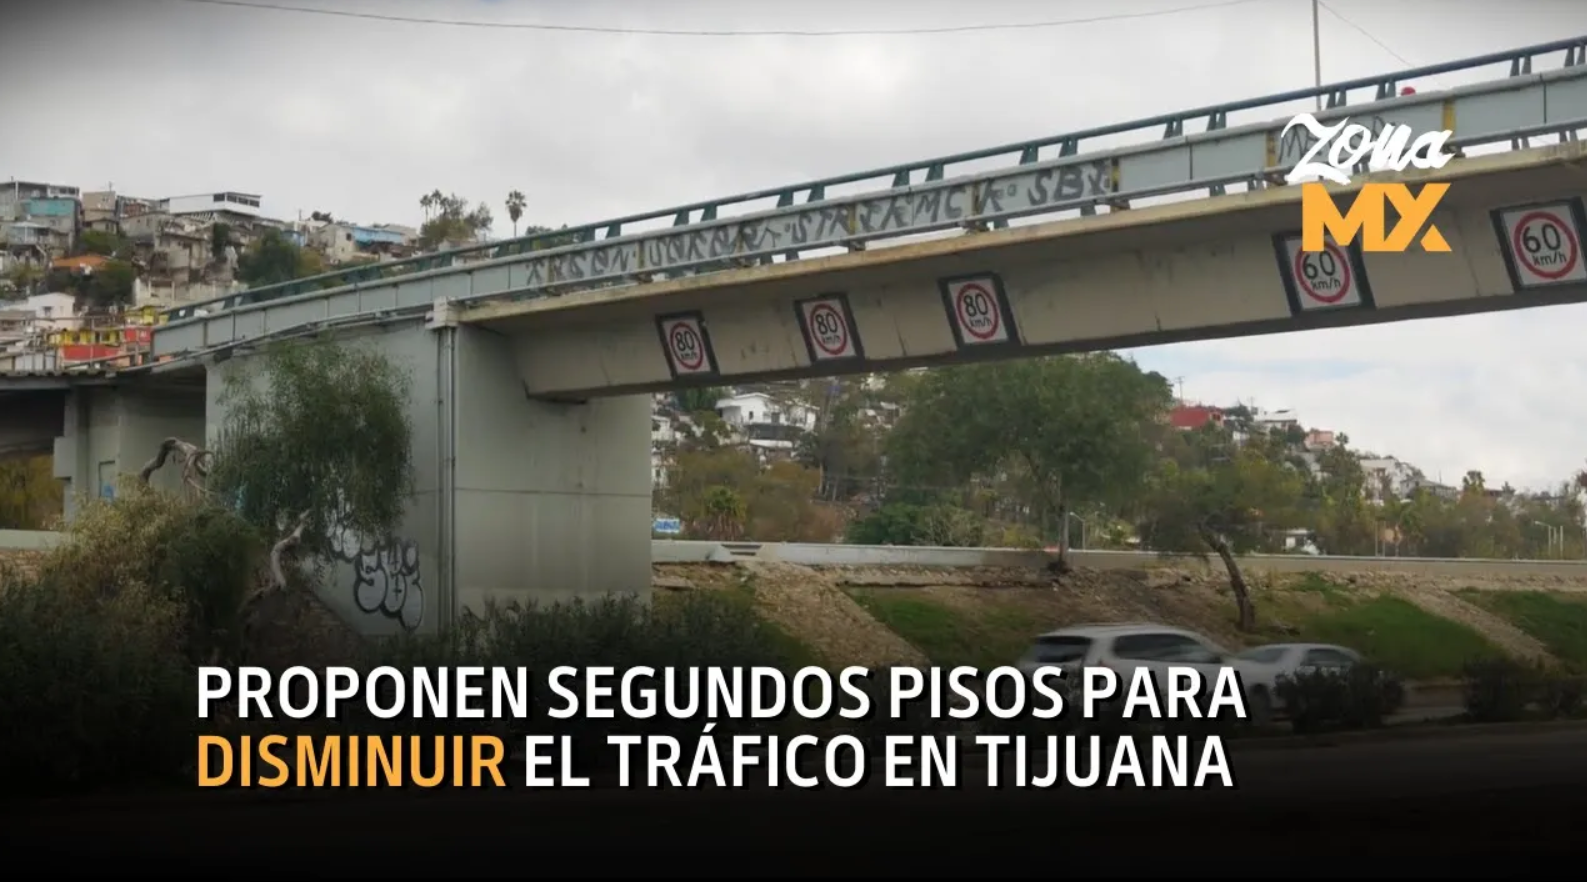 Proponen segundos pisos para disminuir el tráfico en Tijuana